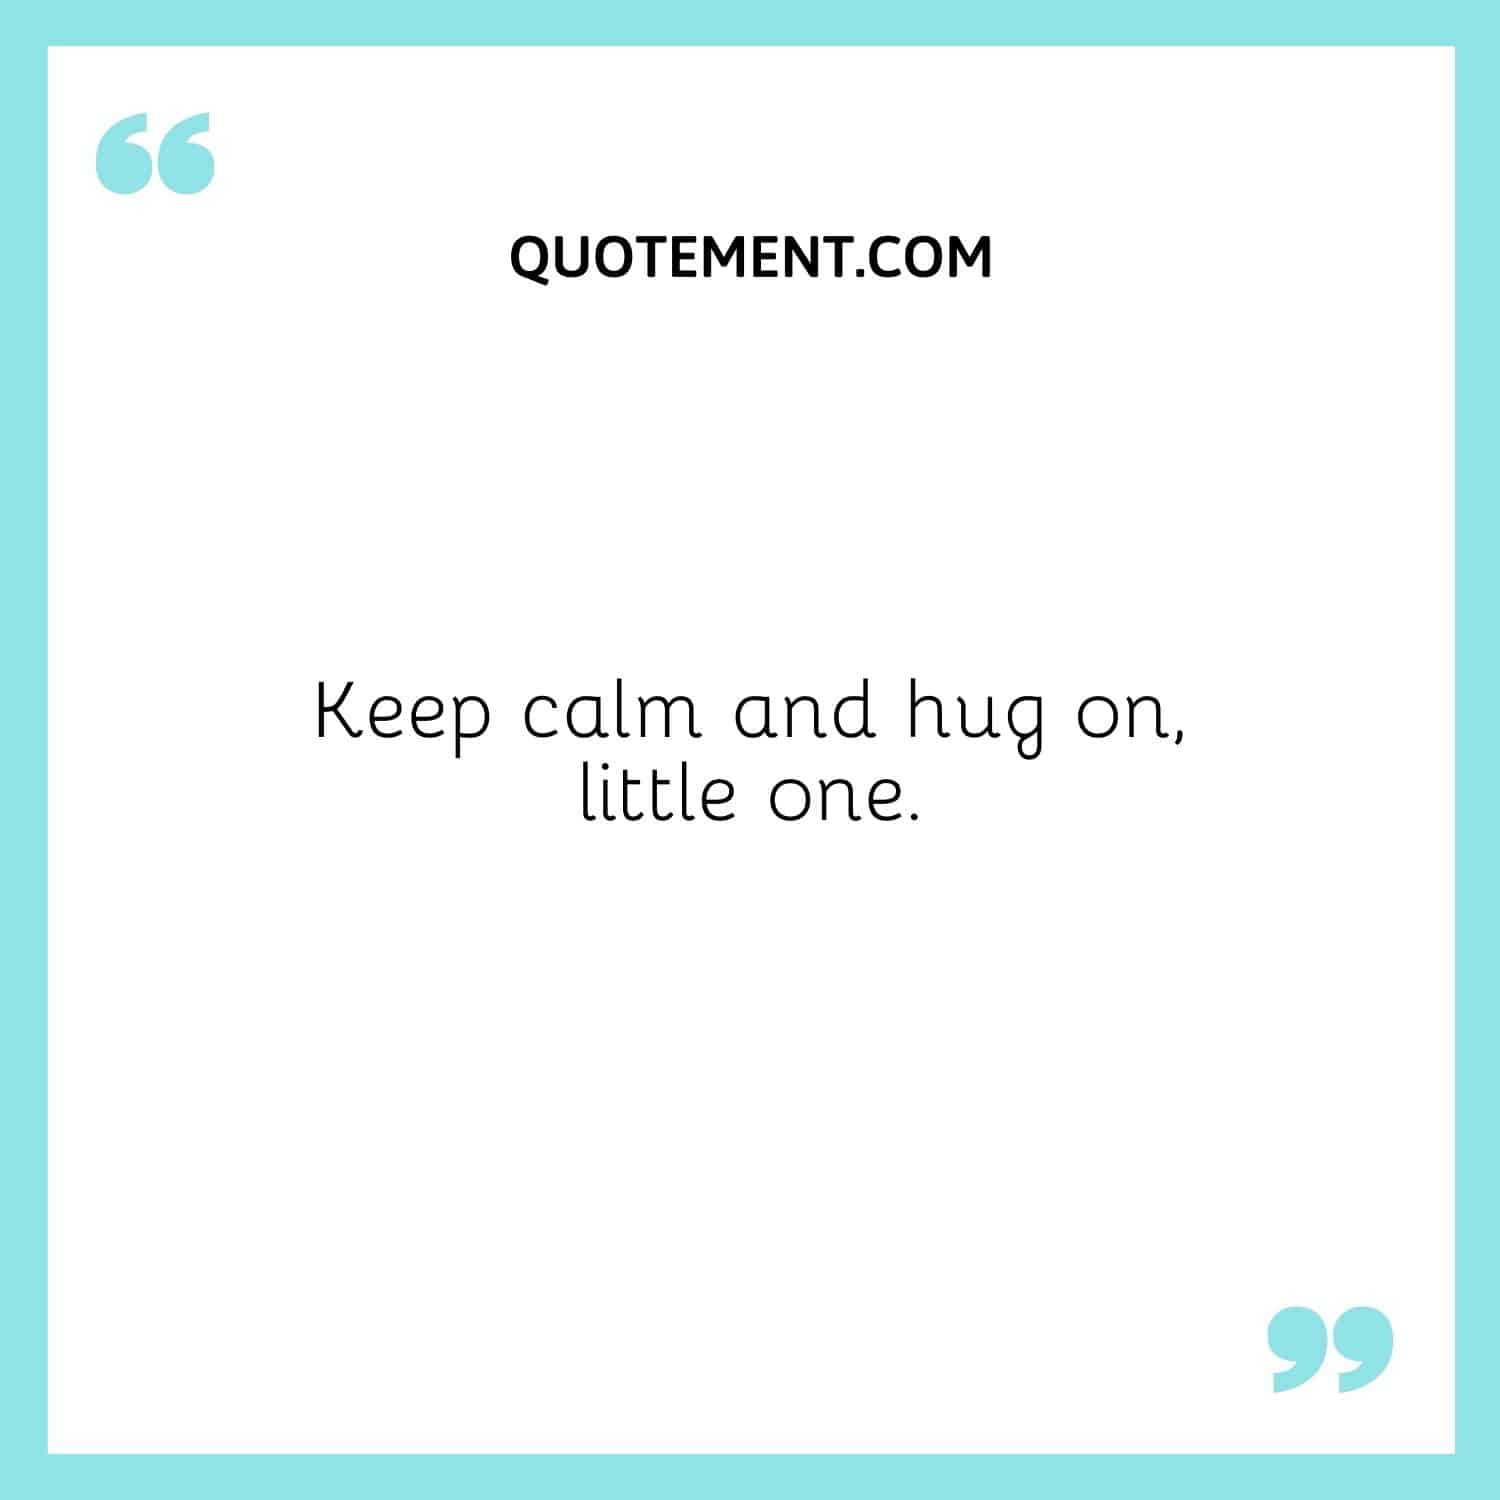 Keep calm and hug on